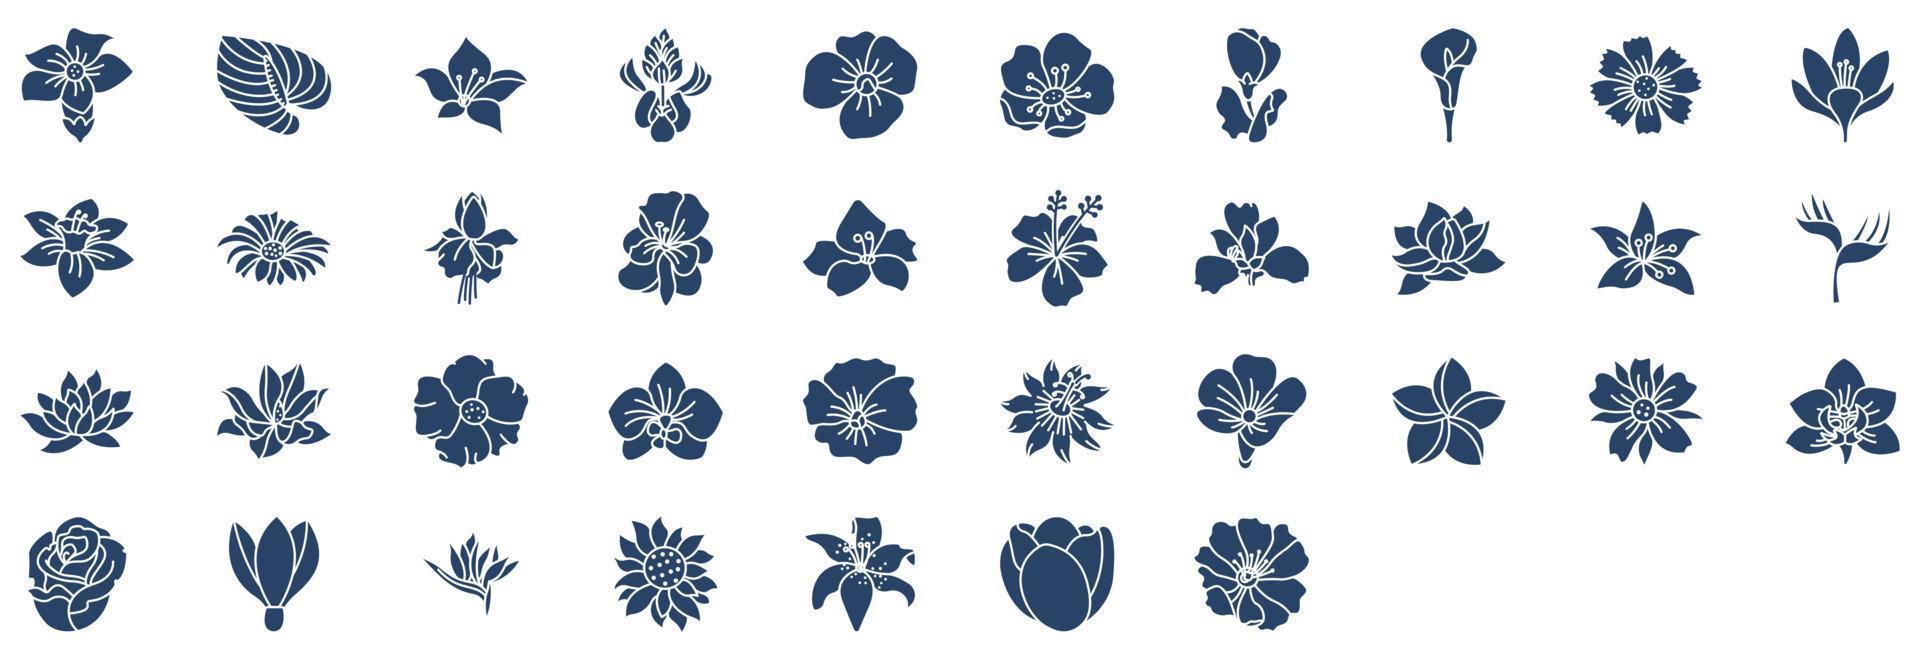 verzameling van pictogrammen verwant naar bloemen, inclusief pictogrammen Leuk vinden iris, papaver, sneeuwklokje, roos en meer. vector illustraties, pixel perfect reeks